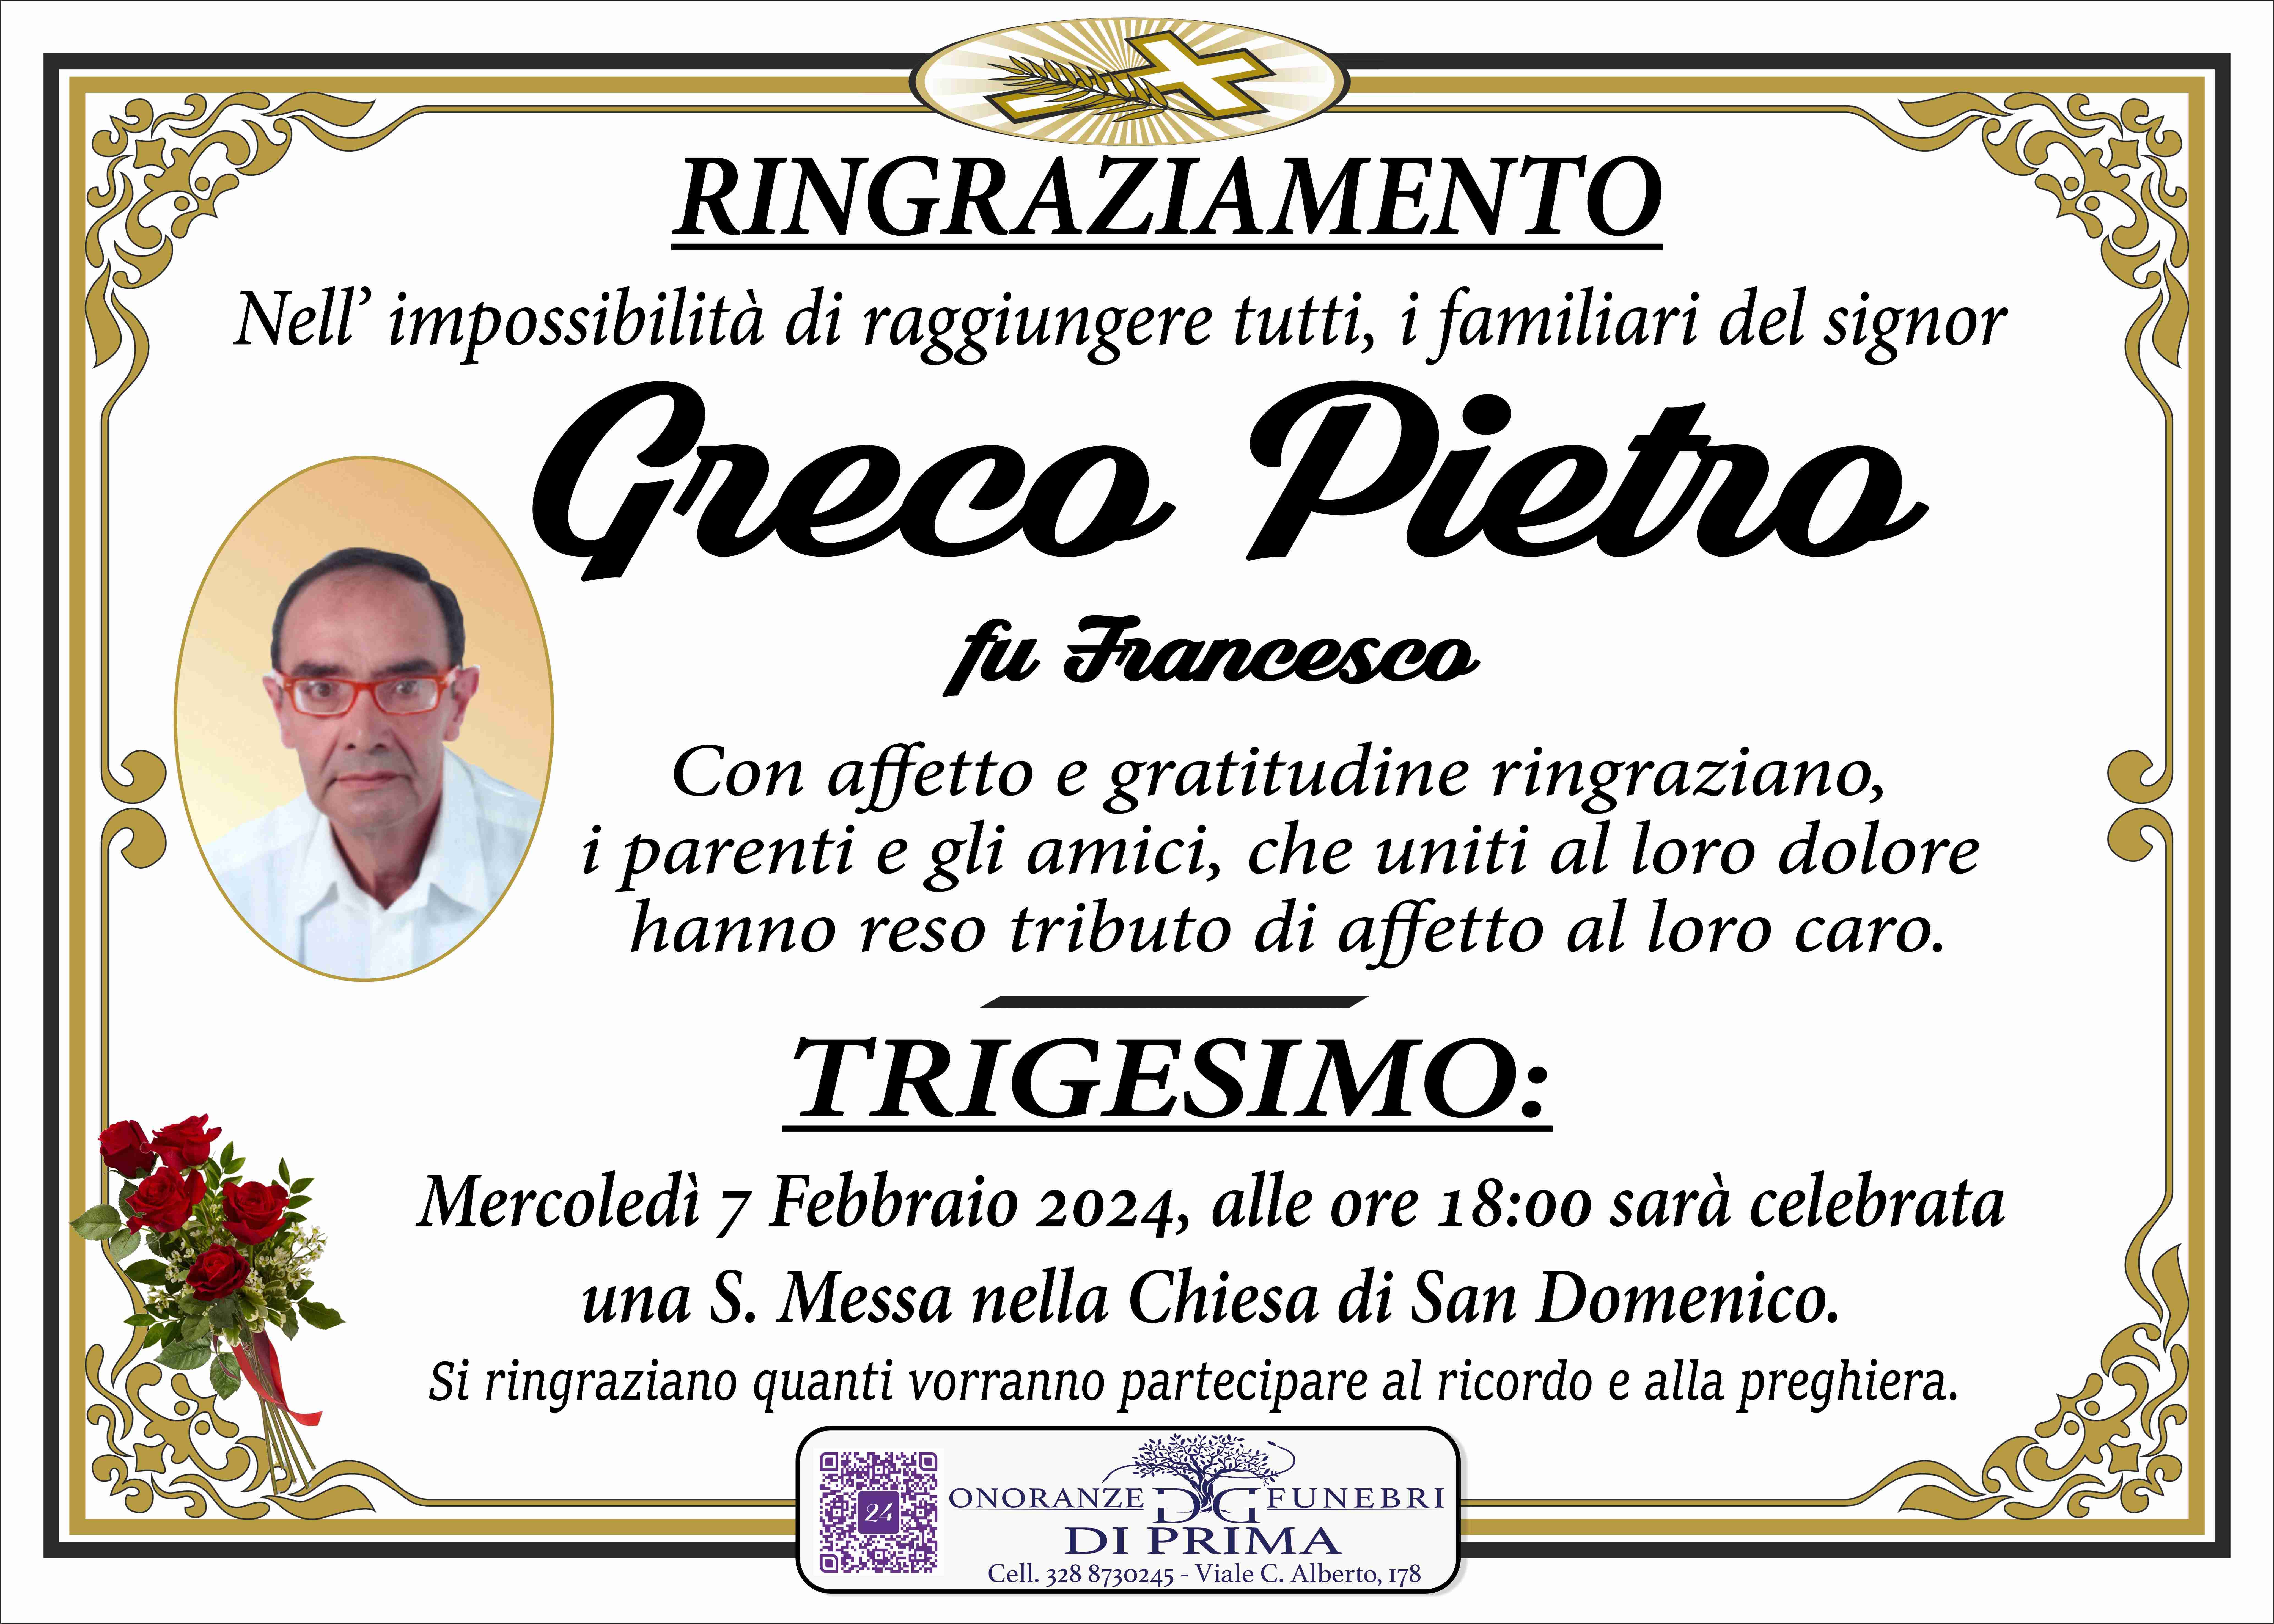 Pietro Greco